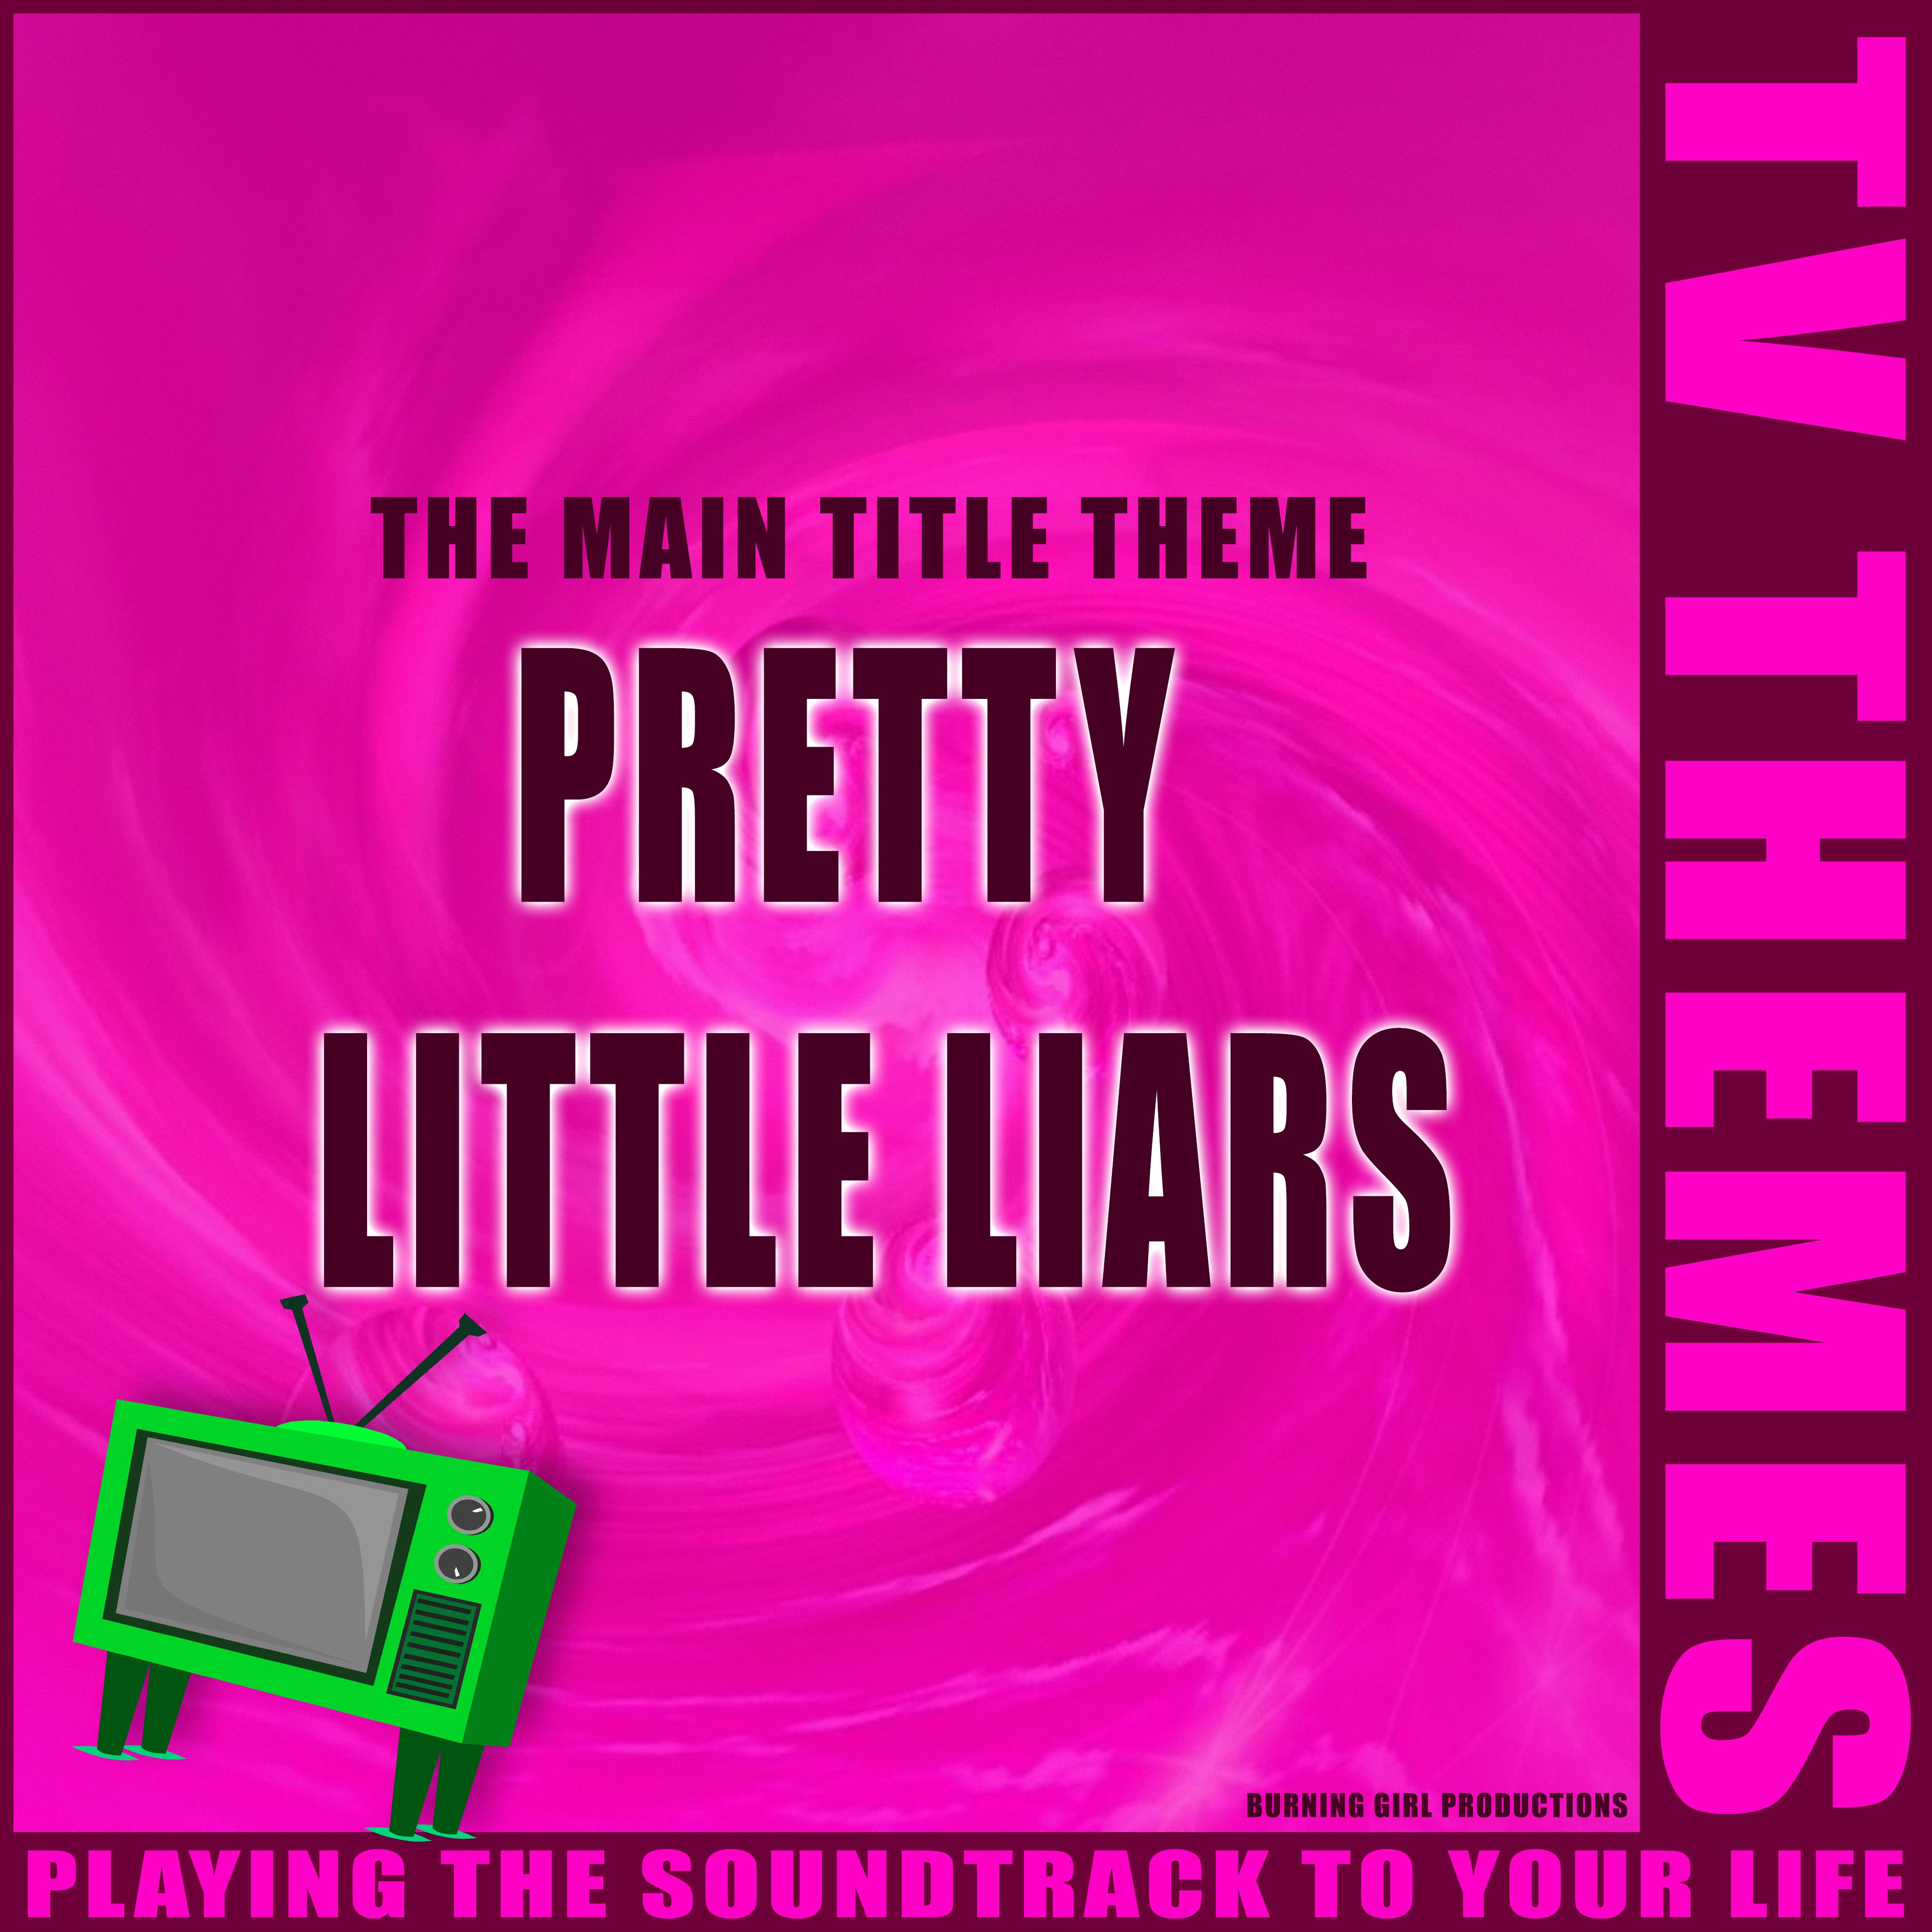 The Main Title Theme - Pretty Little Liars